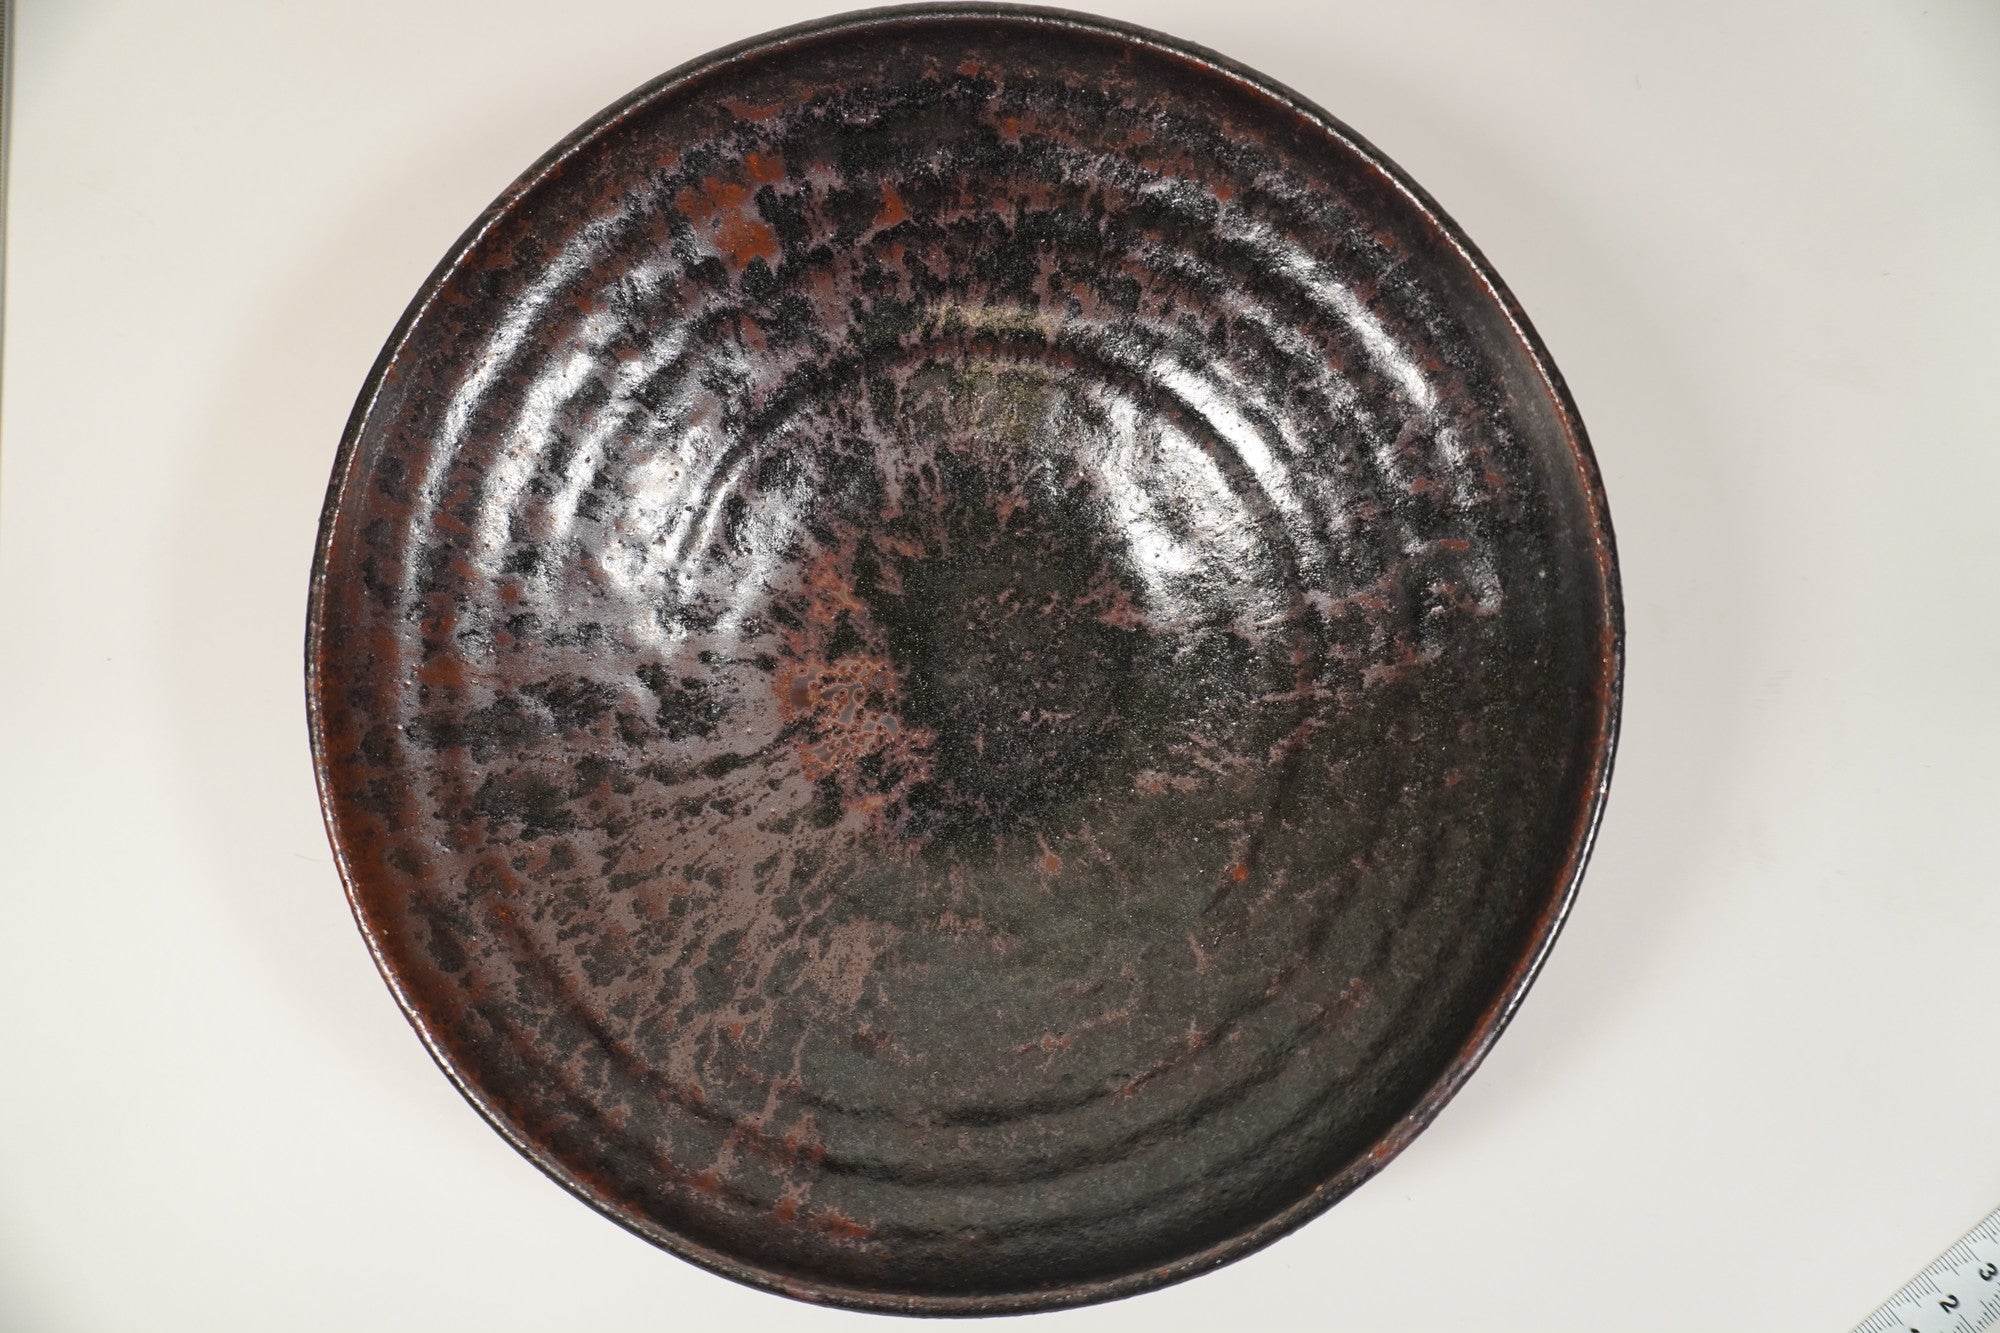 Manabu Yoshida Iron glaze bowl 7 inch